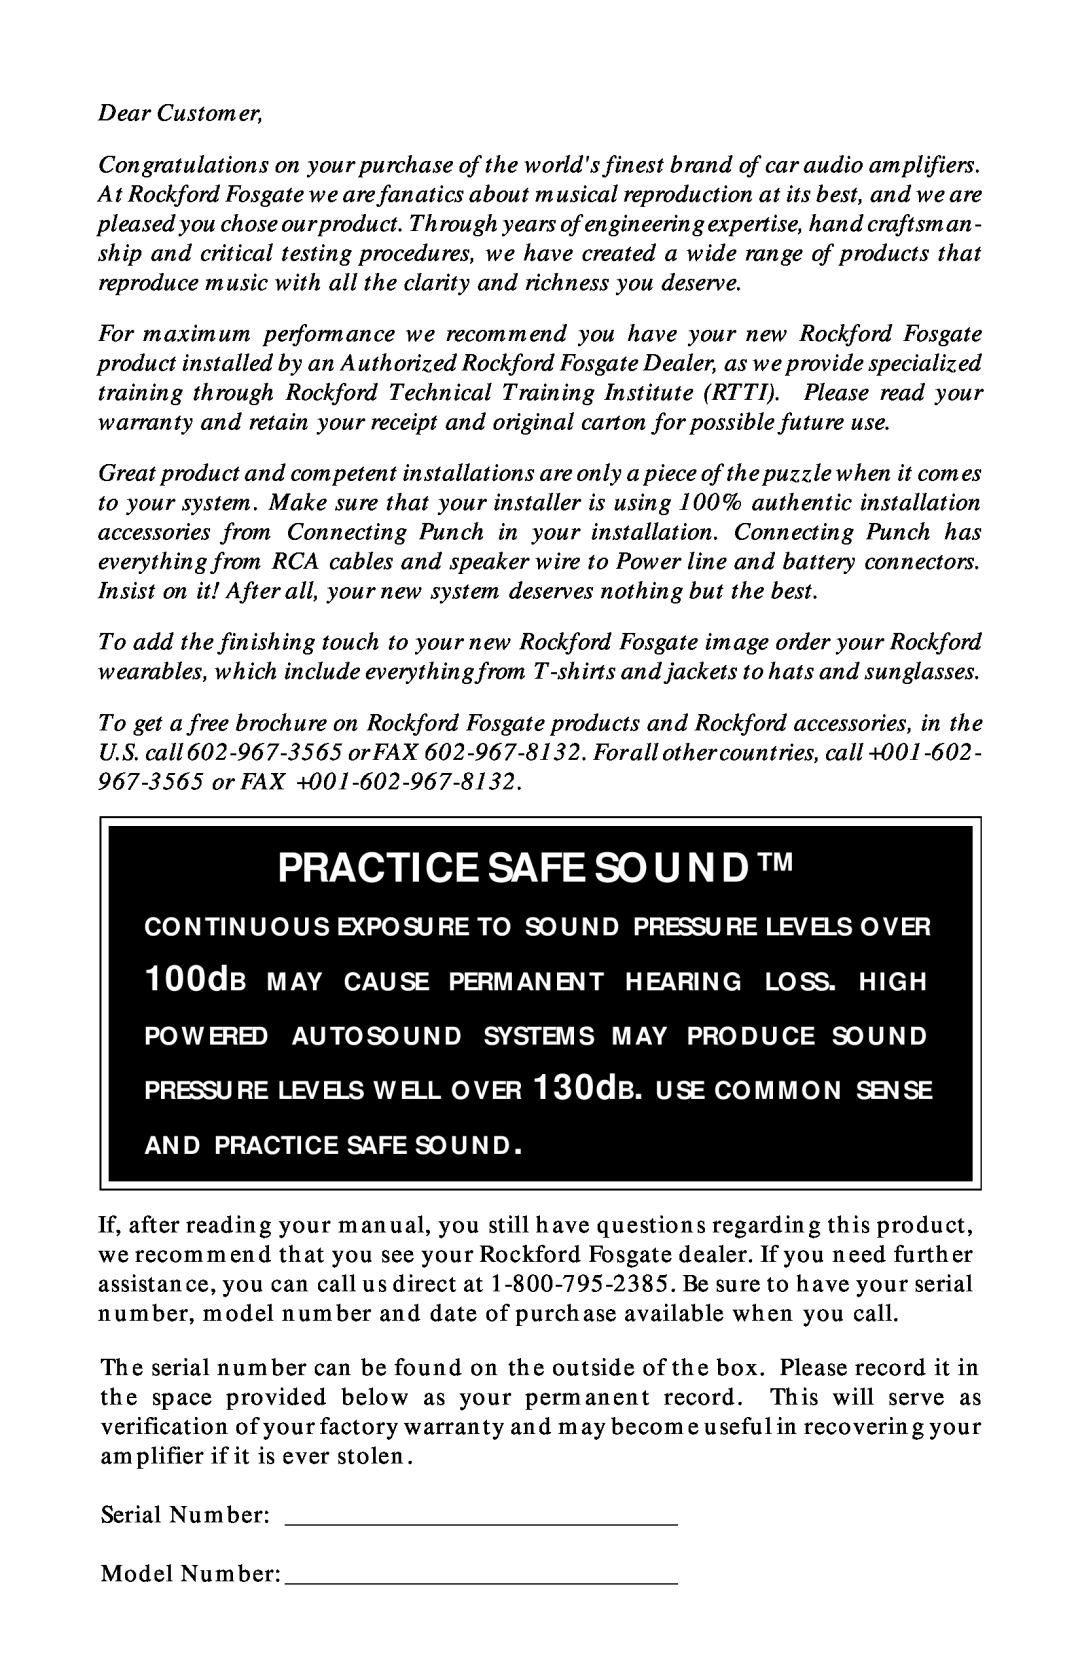 Rockford Fosgate 360.6 manual Practice Safe Sound 